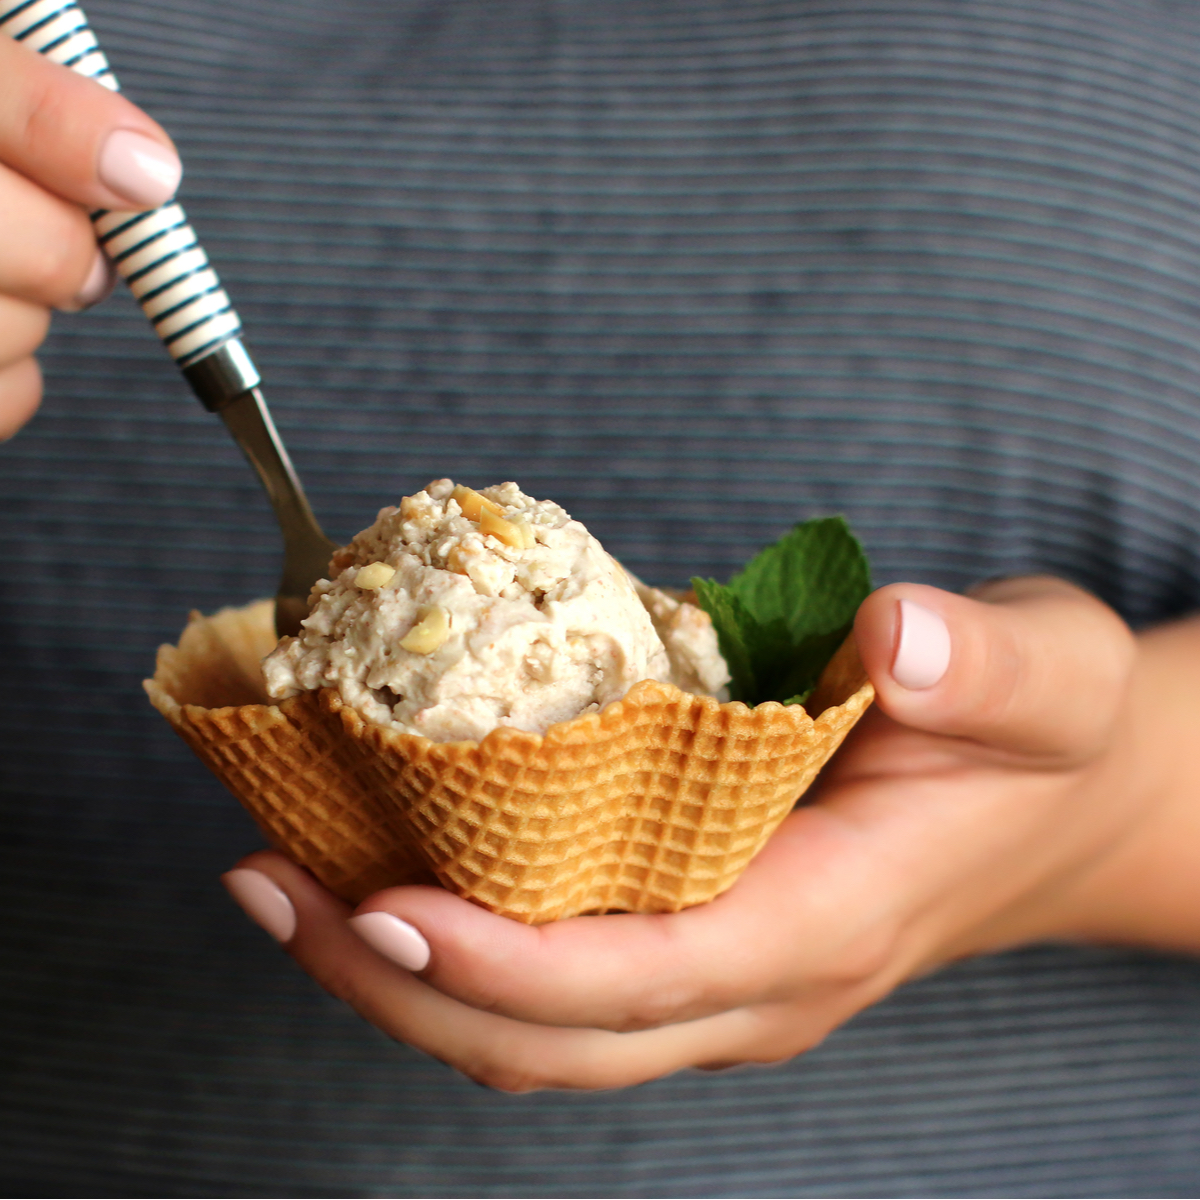 How to Choose Healthy Vegan Ice Cream